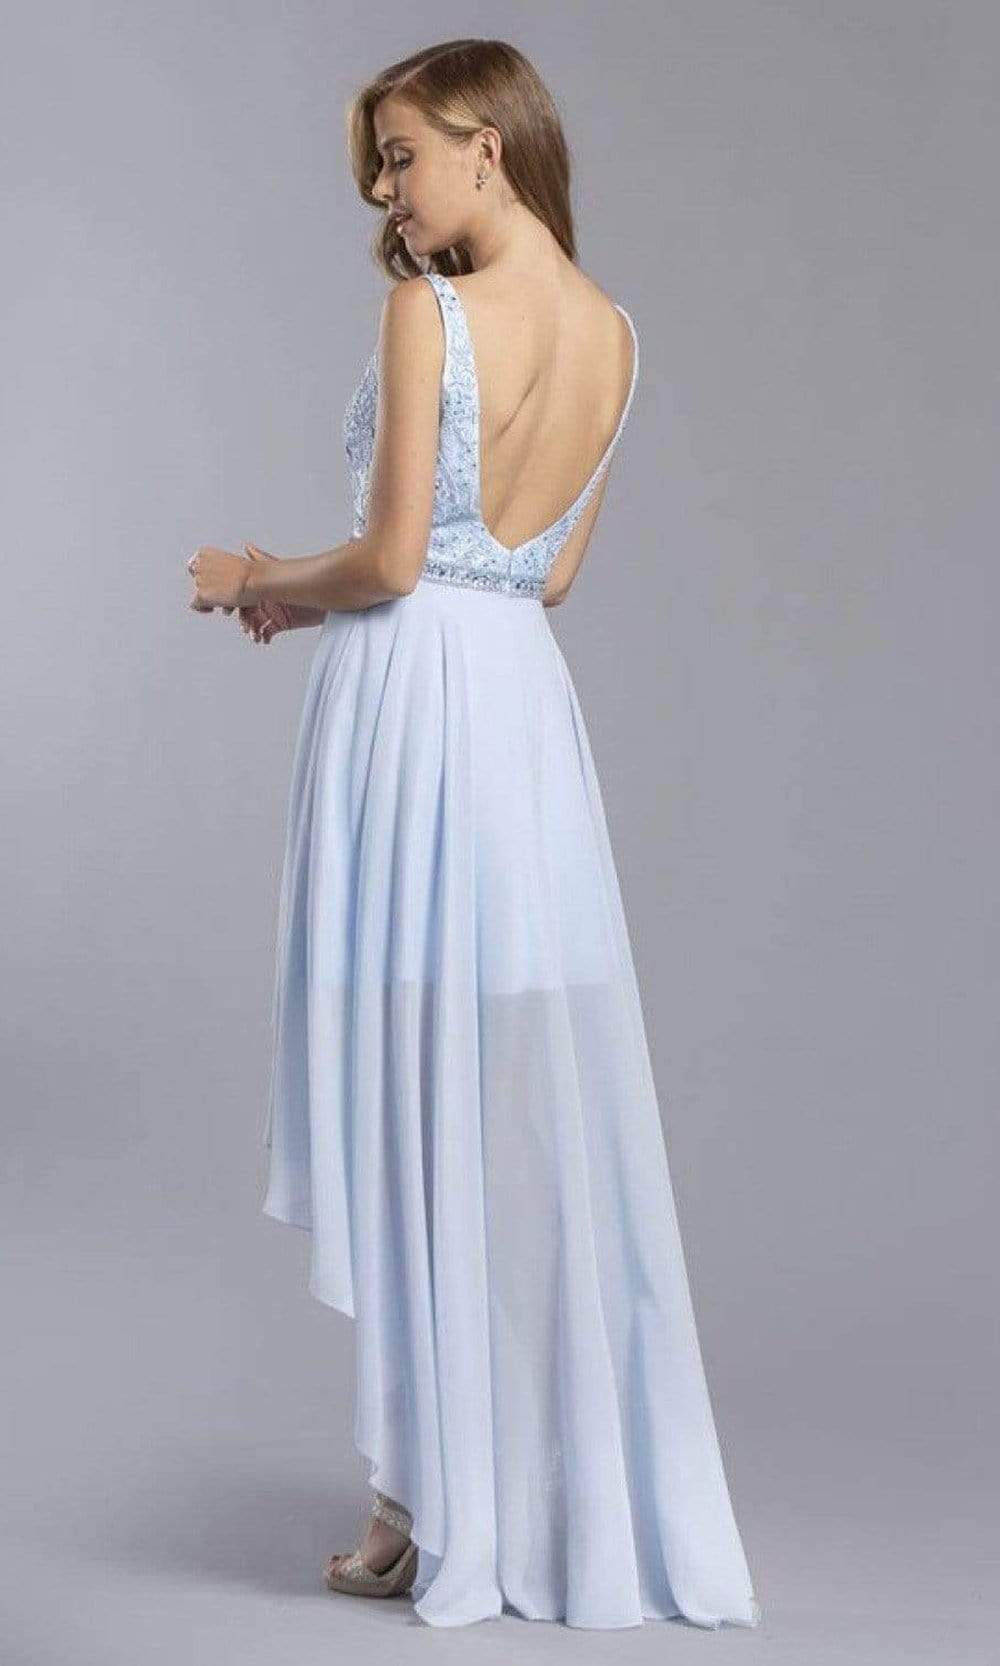 Aspeed Design - S2330 V-Neck A-Line Dress Homecoming Dresses